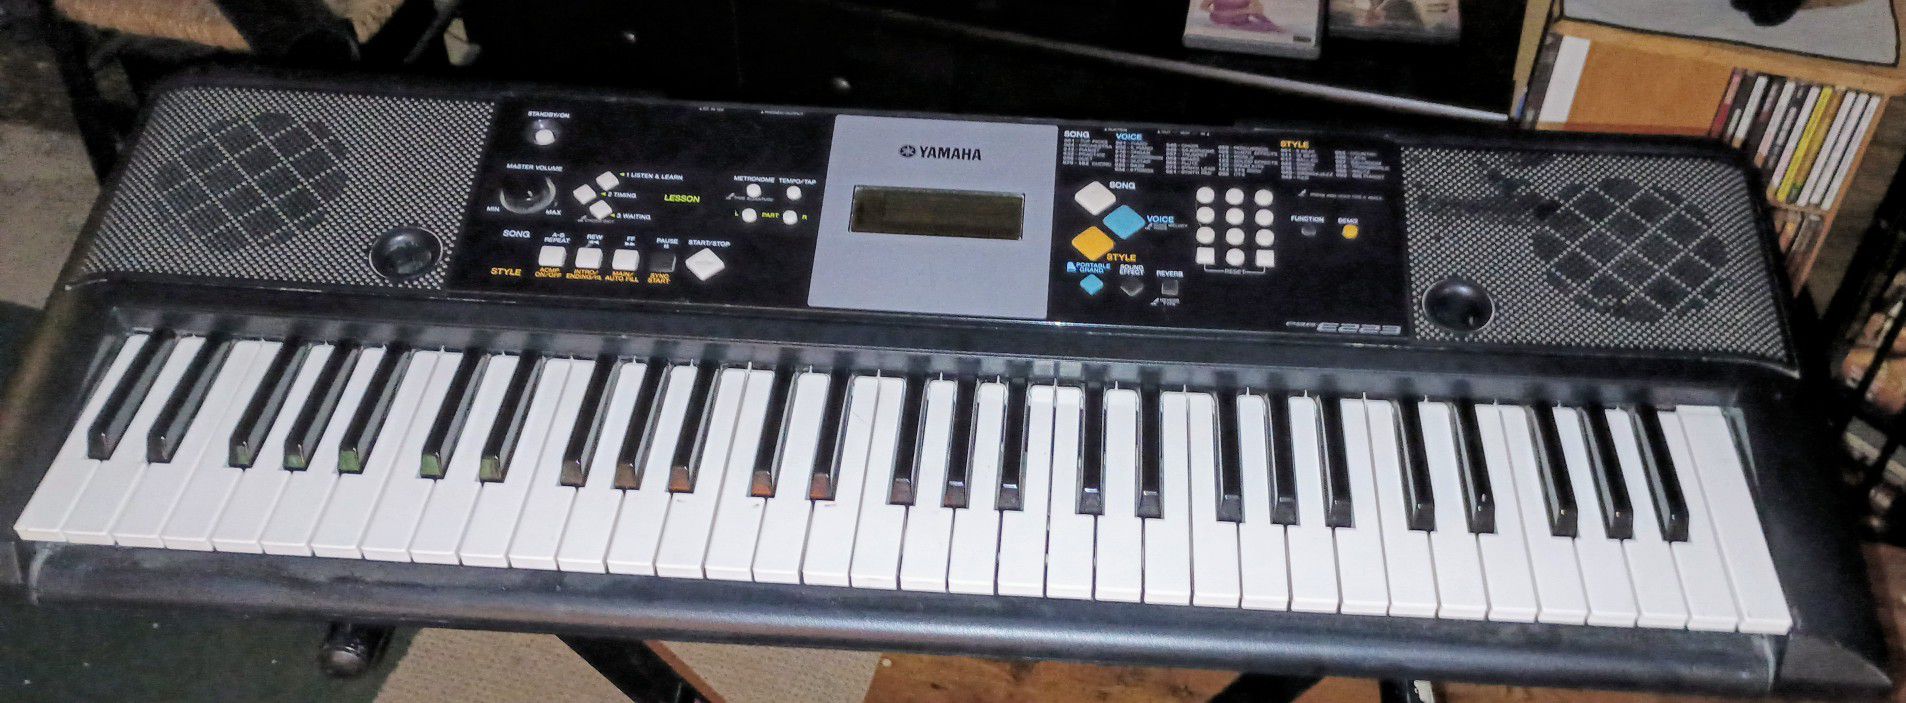 Yamaha Keyboard & Stand PSR E223